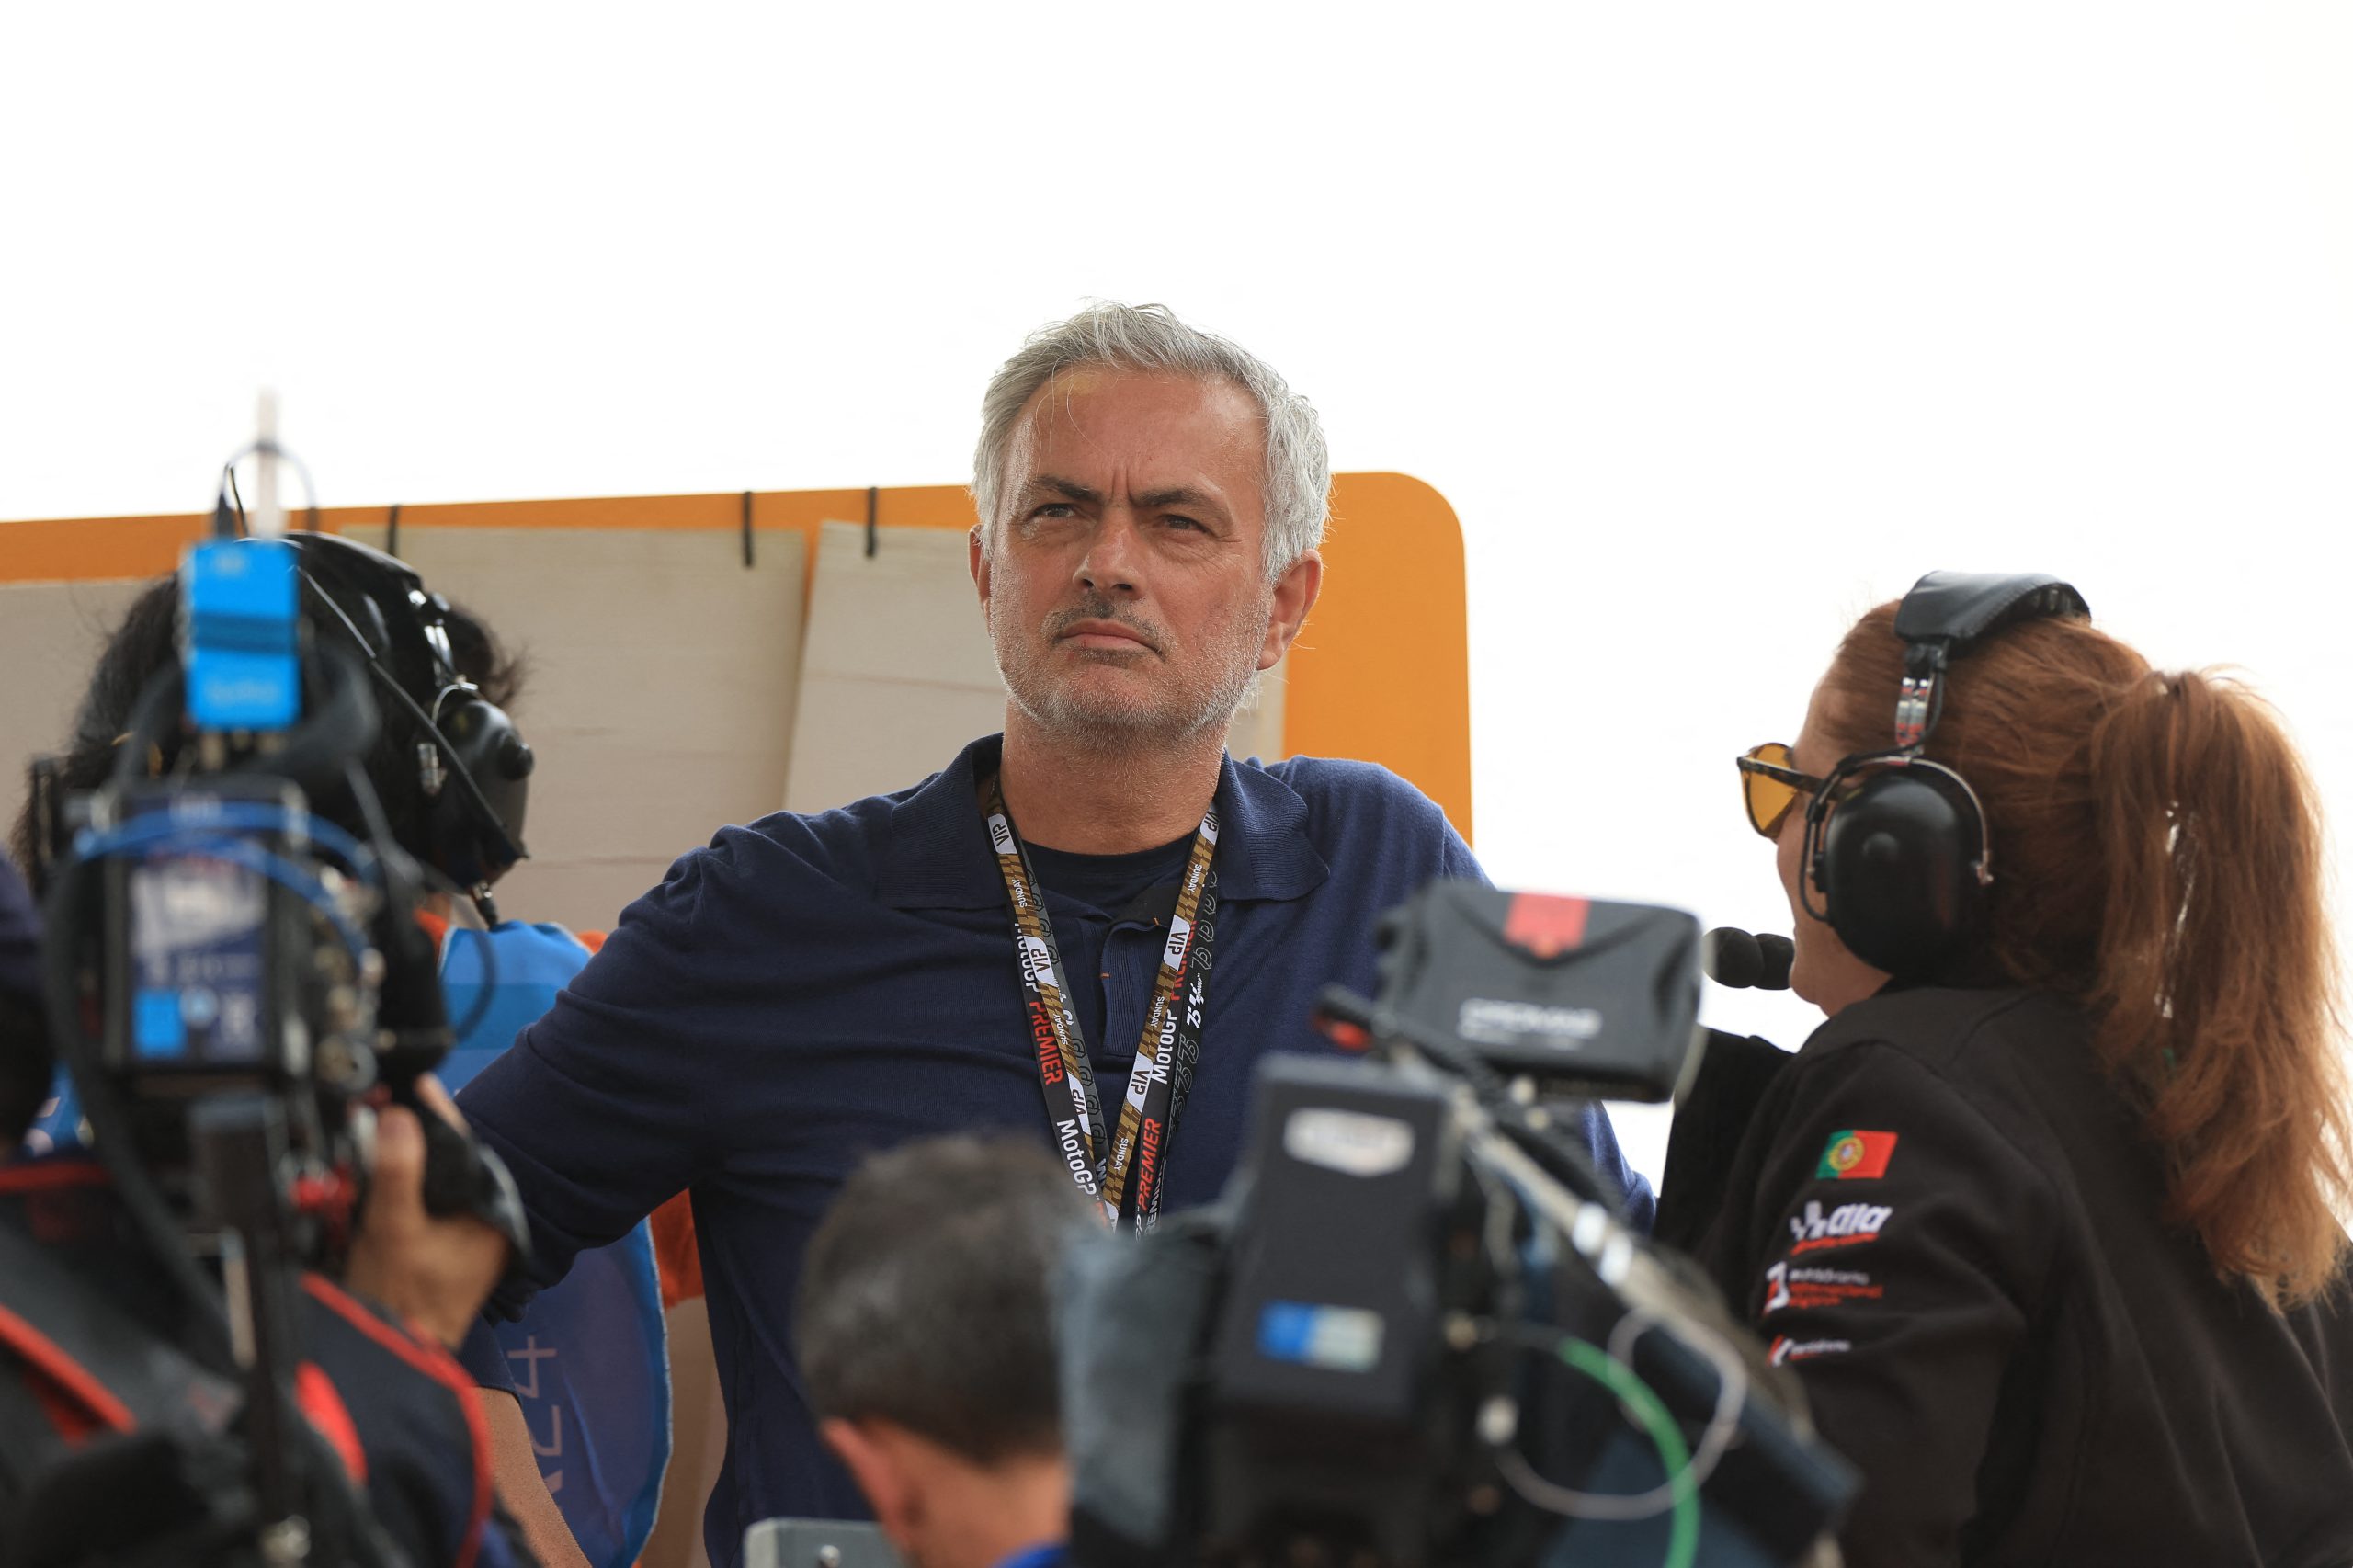 José Mourinho assiste à corrida de MotoGP do Grande Prémio de Portugal no Circuito Internacional do Algarve, em Portimão (Foto: PATRICIA DE MELO MOREIRA | AFP via Getty Images)